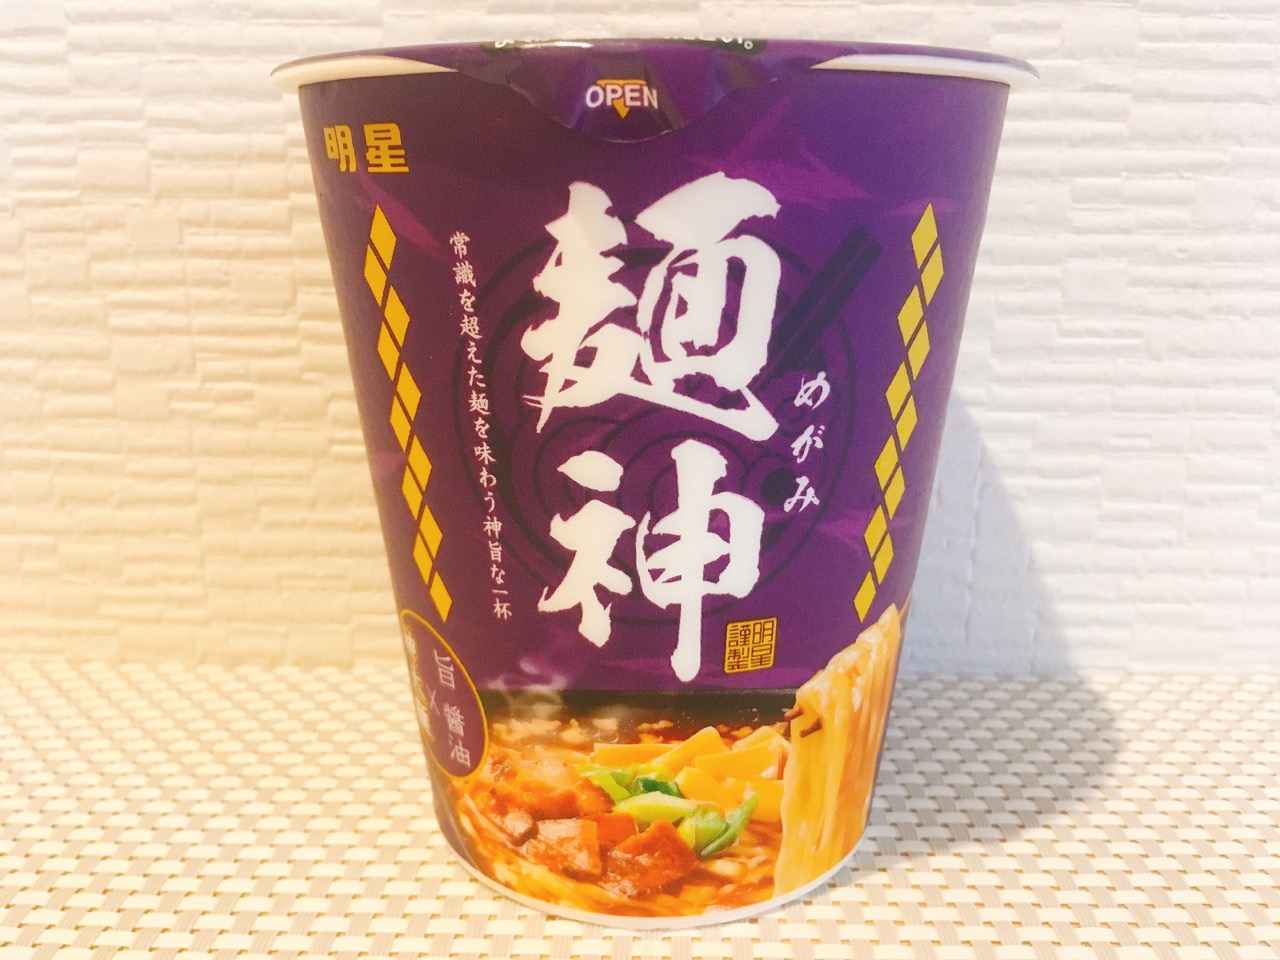 ついにカップ麺はここまで来た!! 神太麺×濃厚スープがお店クオリティすぎる「明星 麺神(めがみ)」食べてみた!!